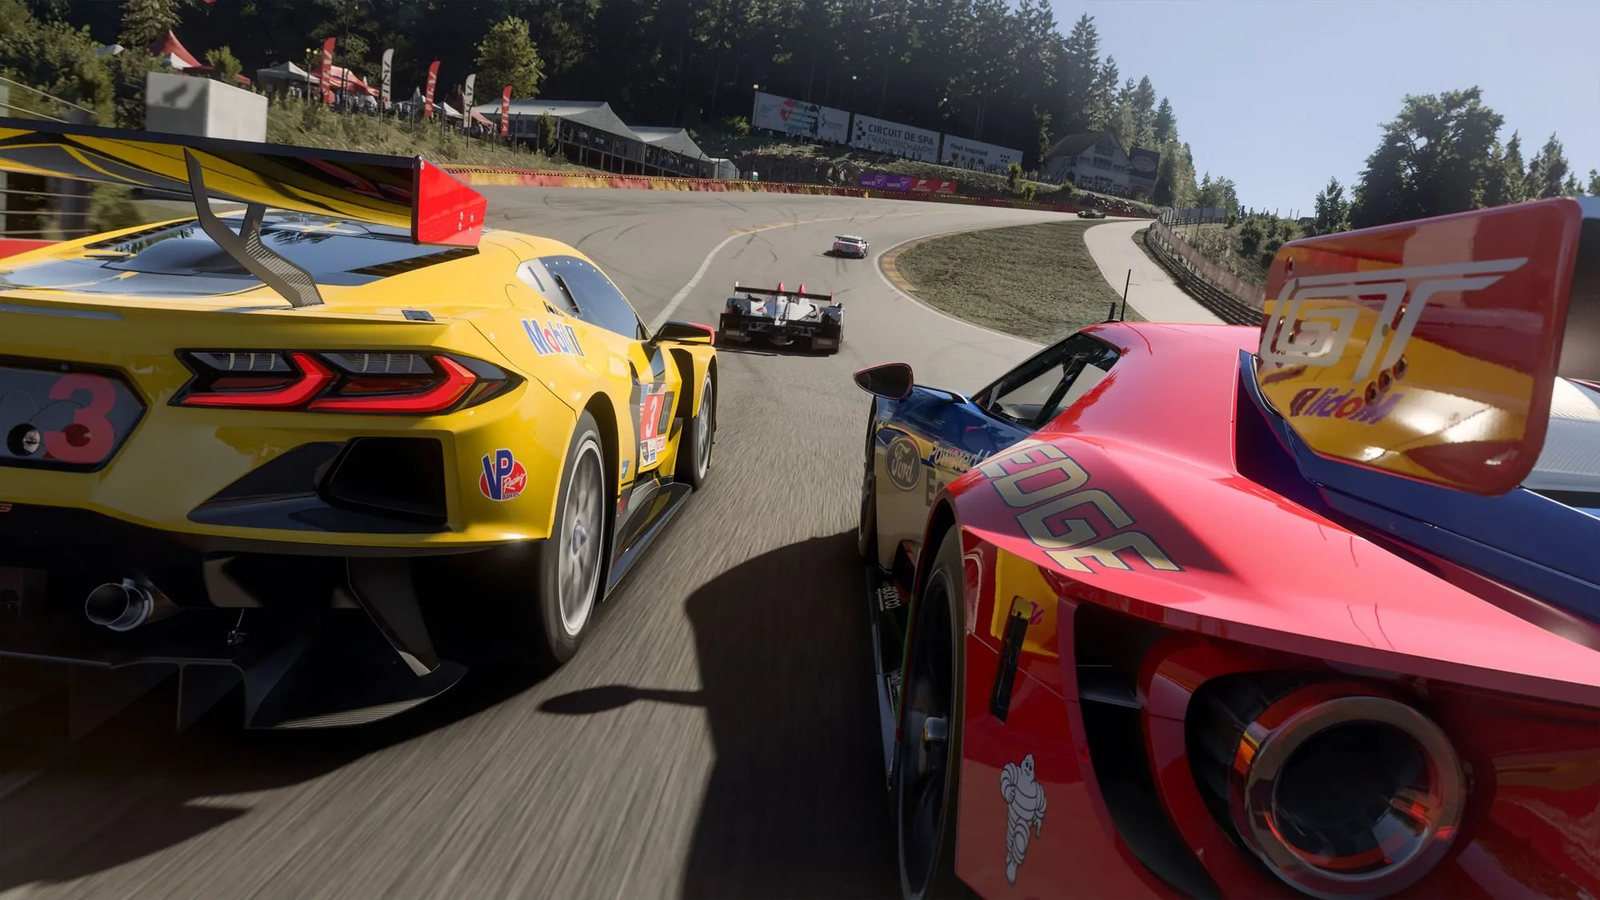 Prévia: Forza Motorsport evolui para tornar-se o jogo de corrida